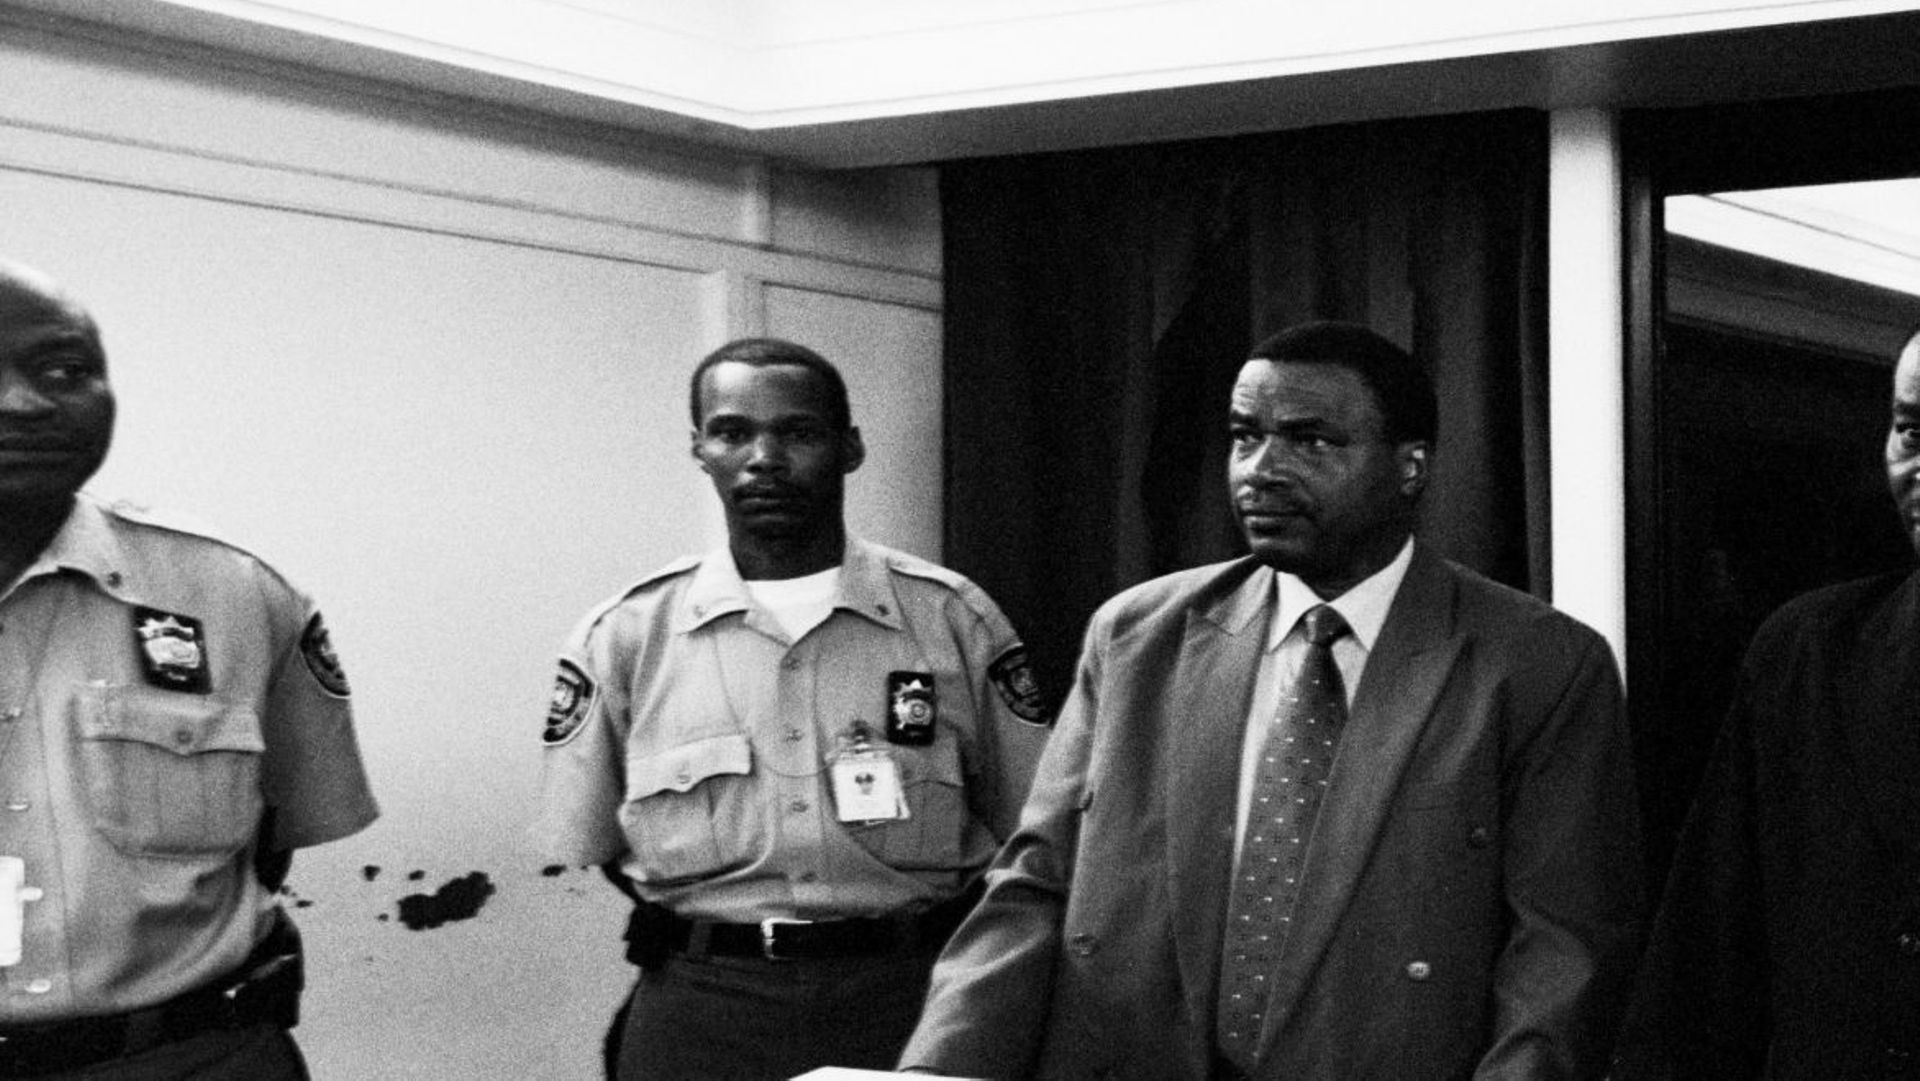 Inside the ICTR (International Criminal Tribunal for Rwanda) : Le Colonel Theoneste Bagosora, le 20 février 2004